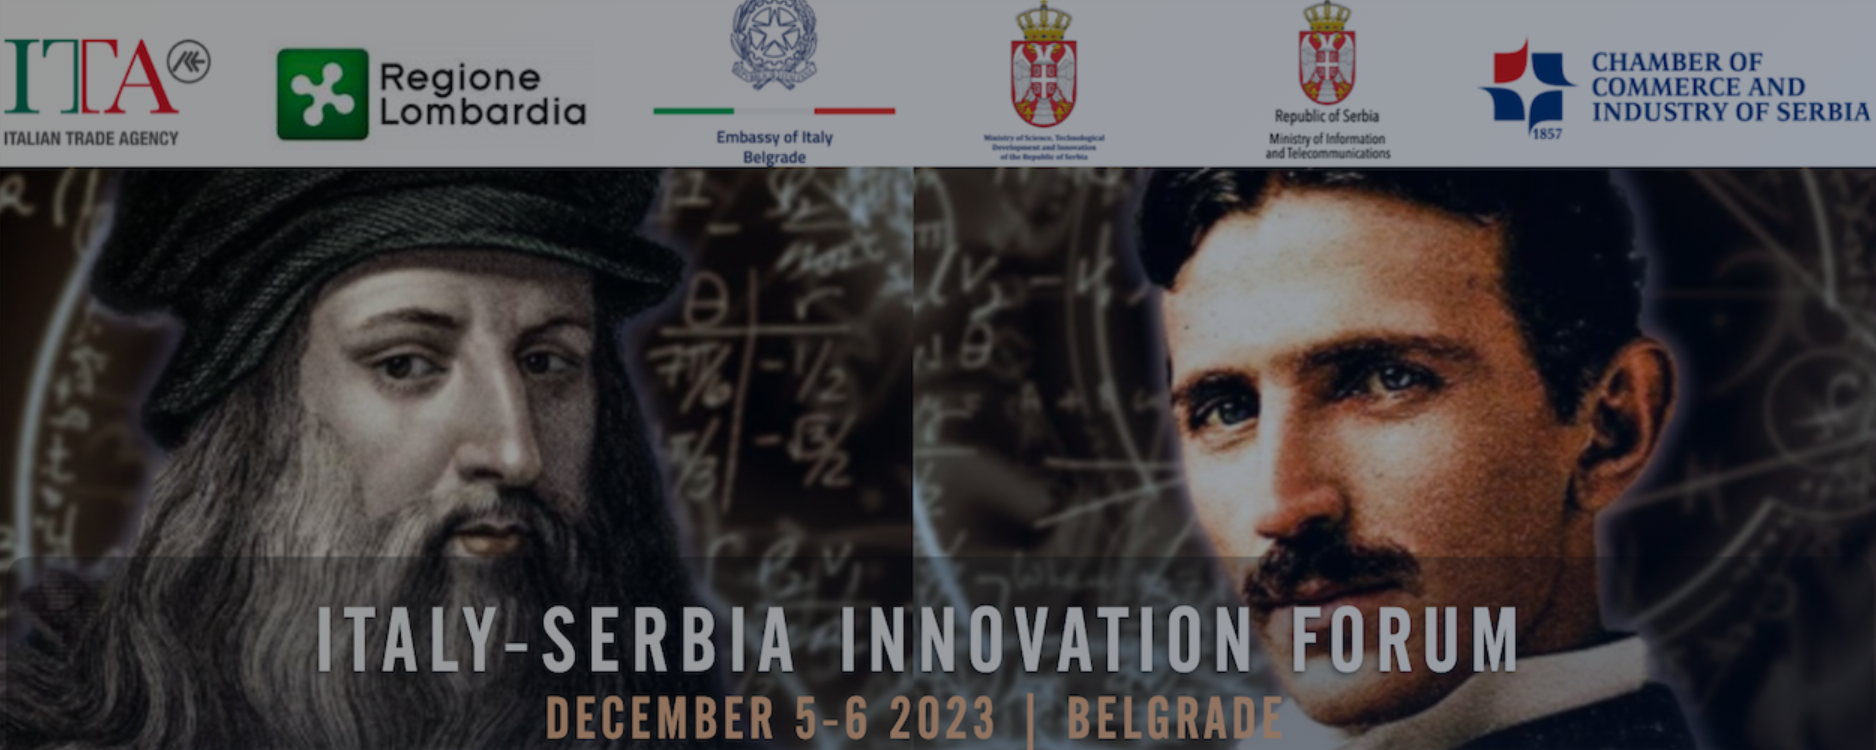 Inovacioni forum Srbija – Italija „Sklapanje poslova radi inovacija“